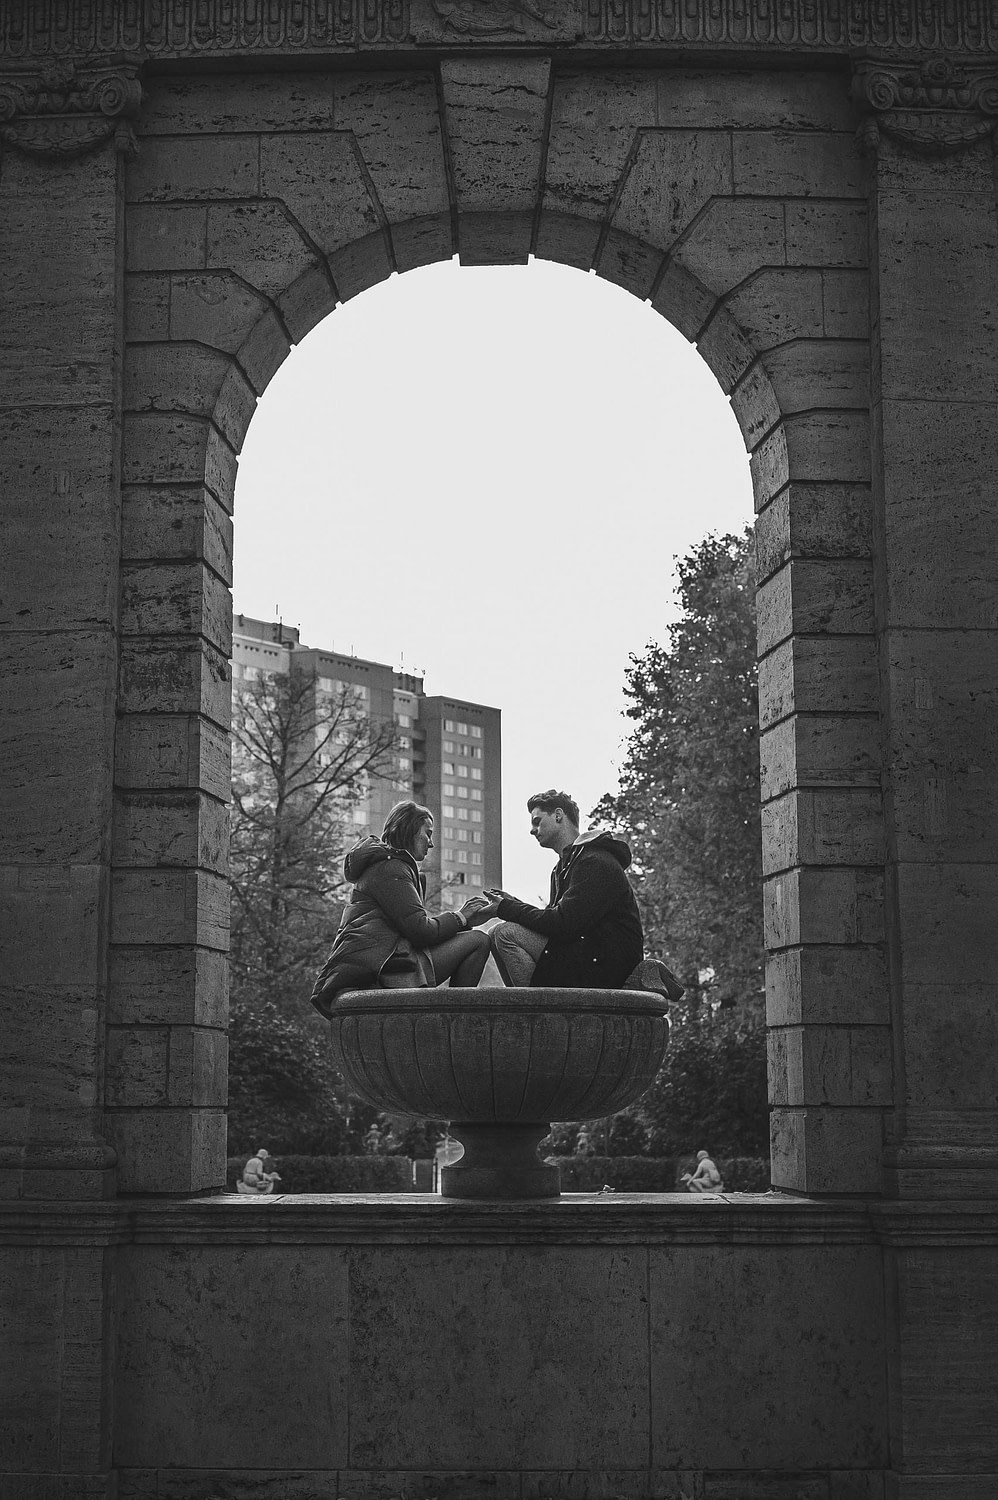 Verlobungsshooting - Paarshooting - Volkspark friedrichshain -Hochzeitsfotograf Berlin - Hochzeitsfotograf Brandenburg - Hochzeitsreportage Berlin